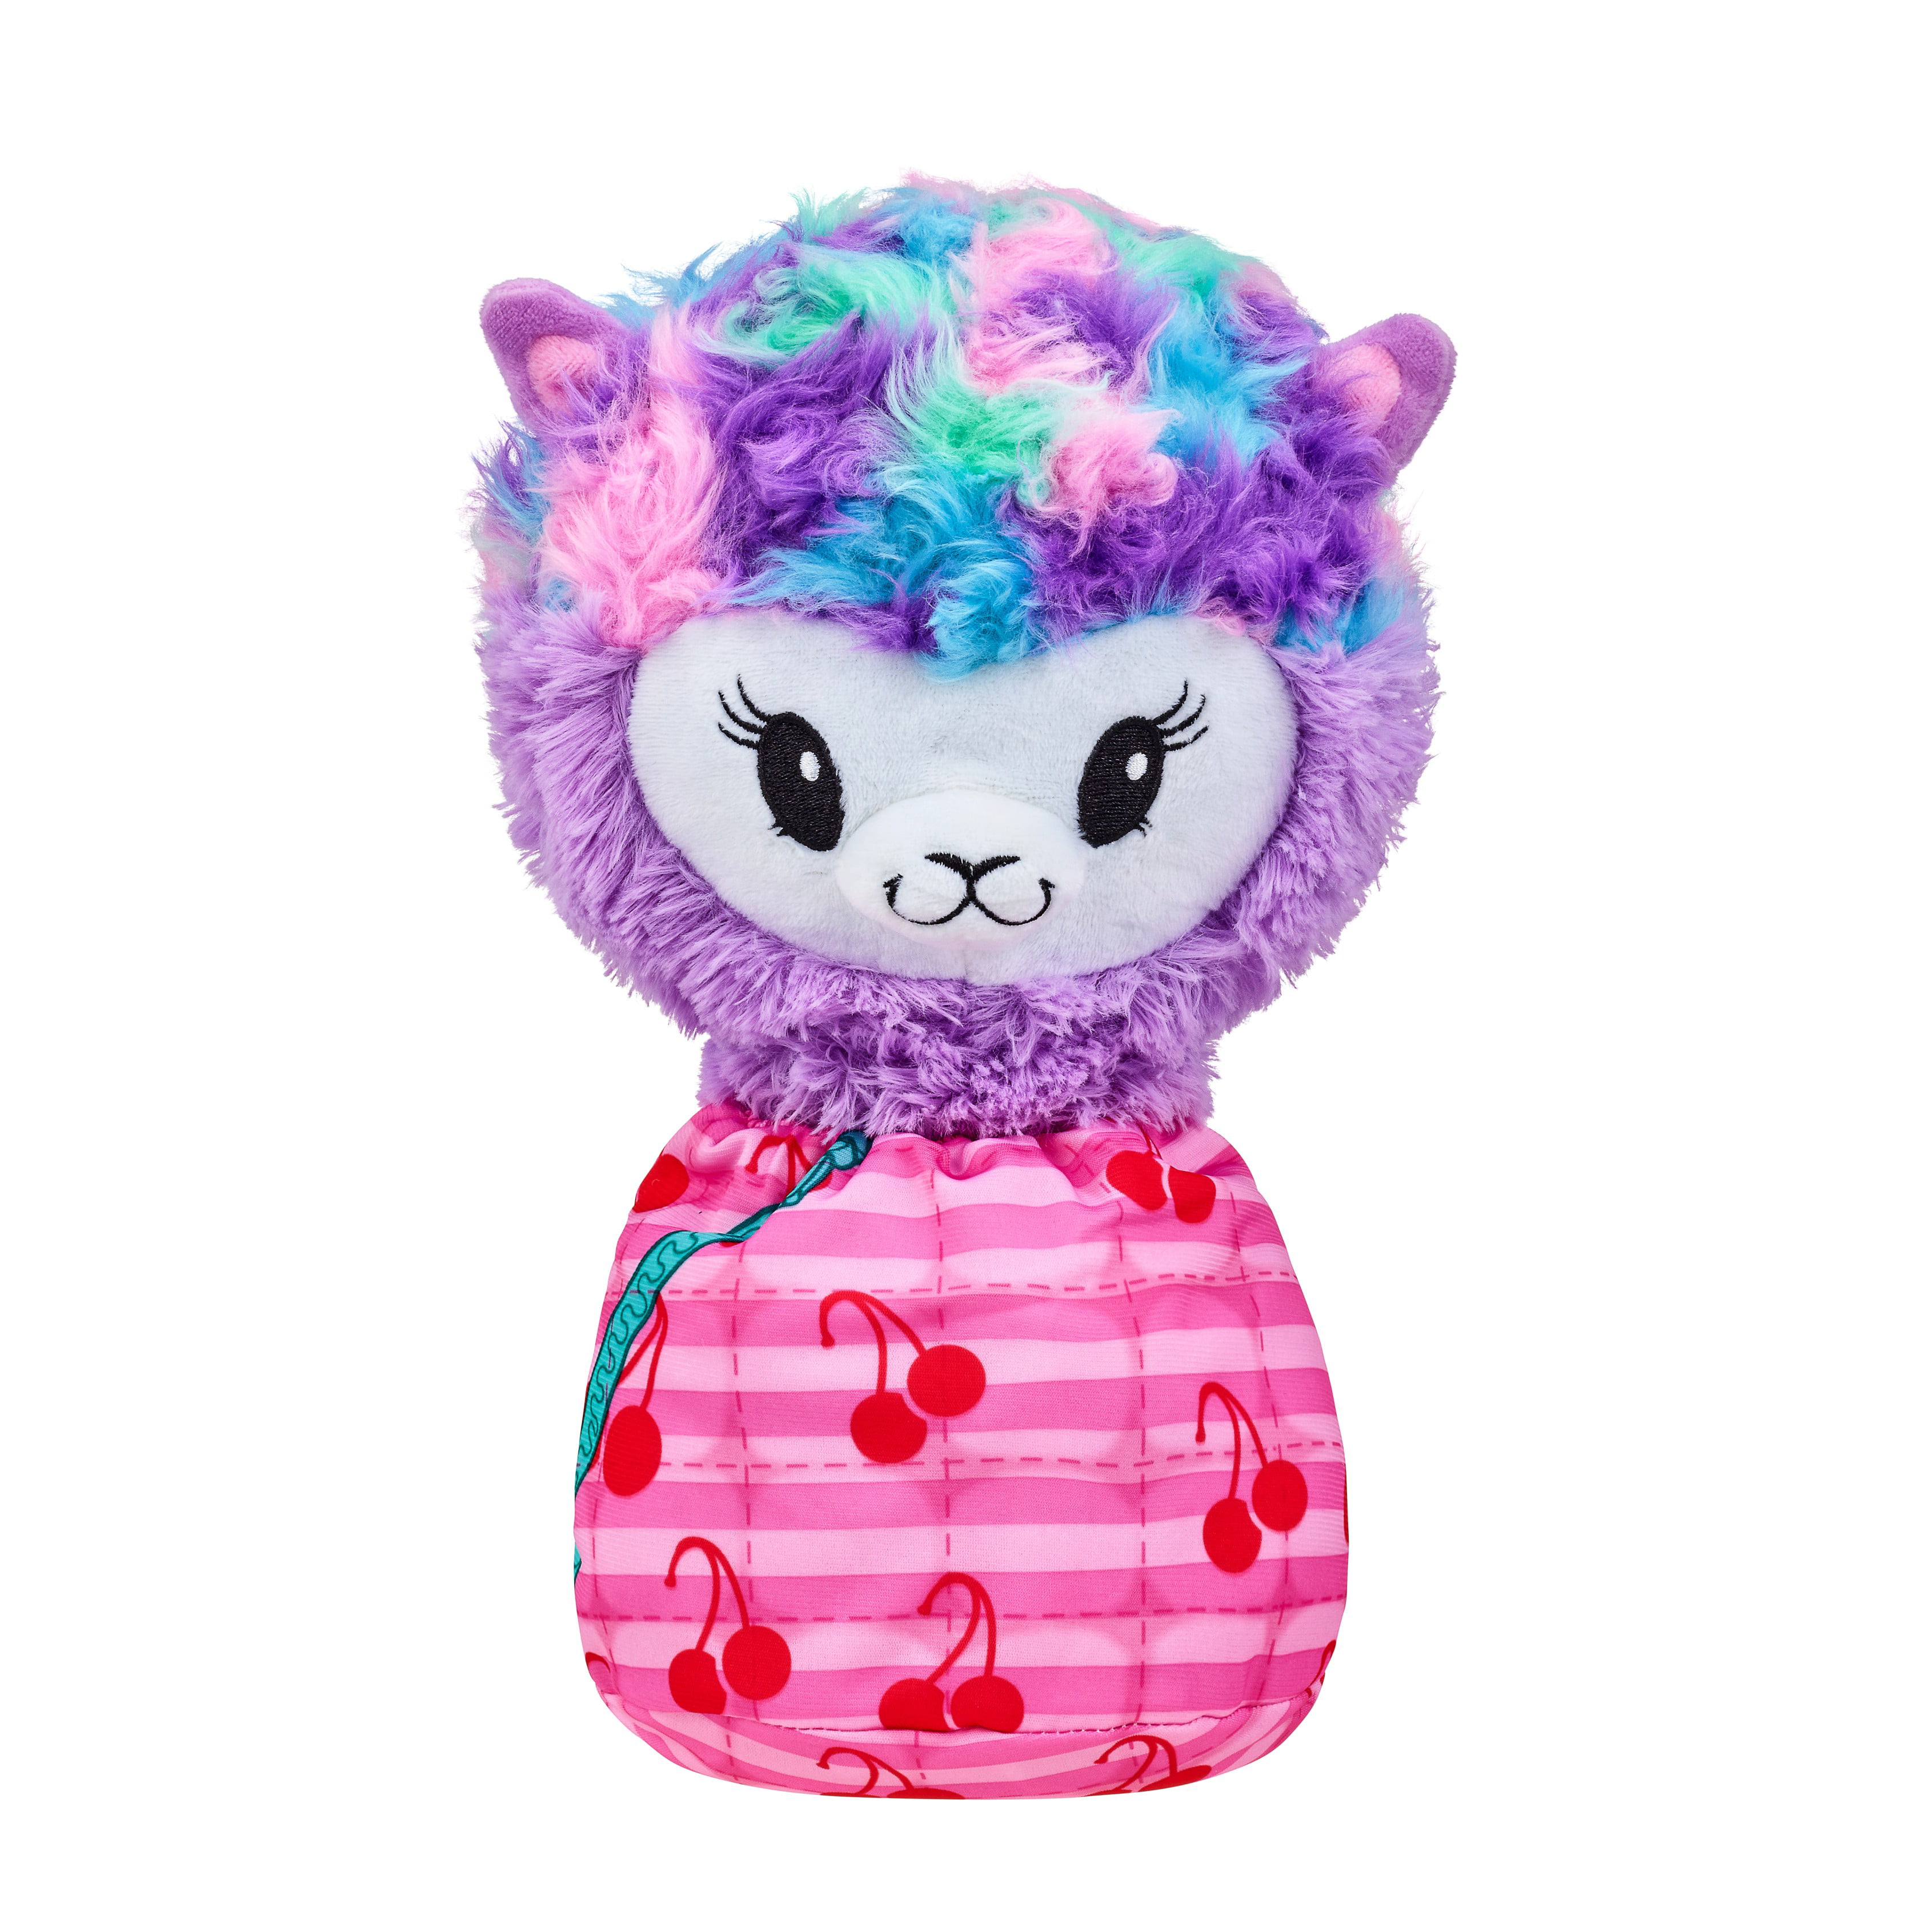 Pikmi Pops Giant Pajama Llama Gemmi Jamma Scented Stuffed Animal Plush Toy New 